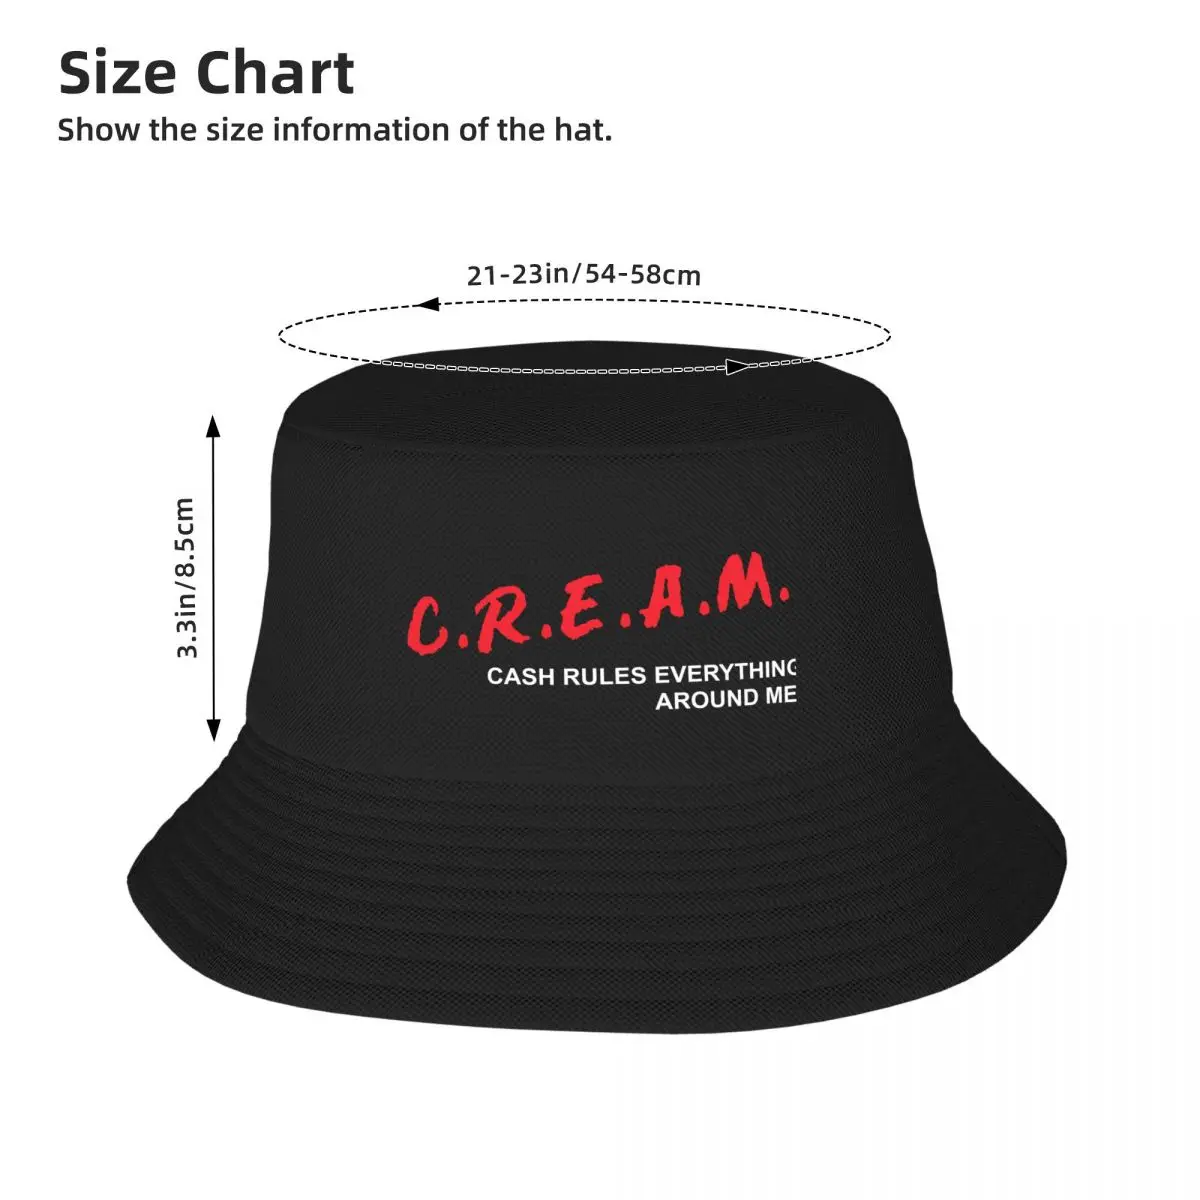 Nueva C. R. E. A. M. en Efectivo las Reglas de Todo lo que Me rodea Sombrero de Cubo Sombrero de Sol Para Niños Sombrero de moda Femenina de los Hombres . ' - ' . 3